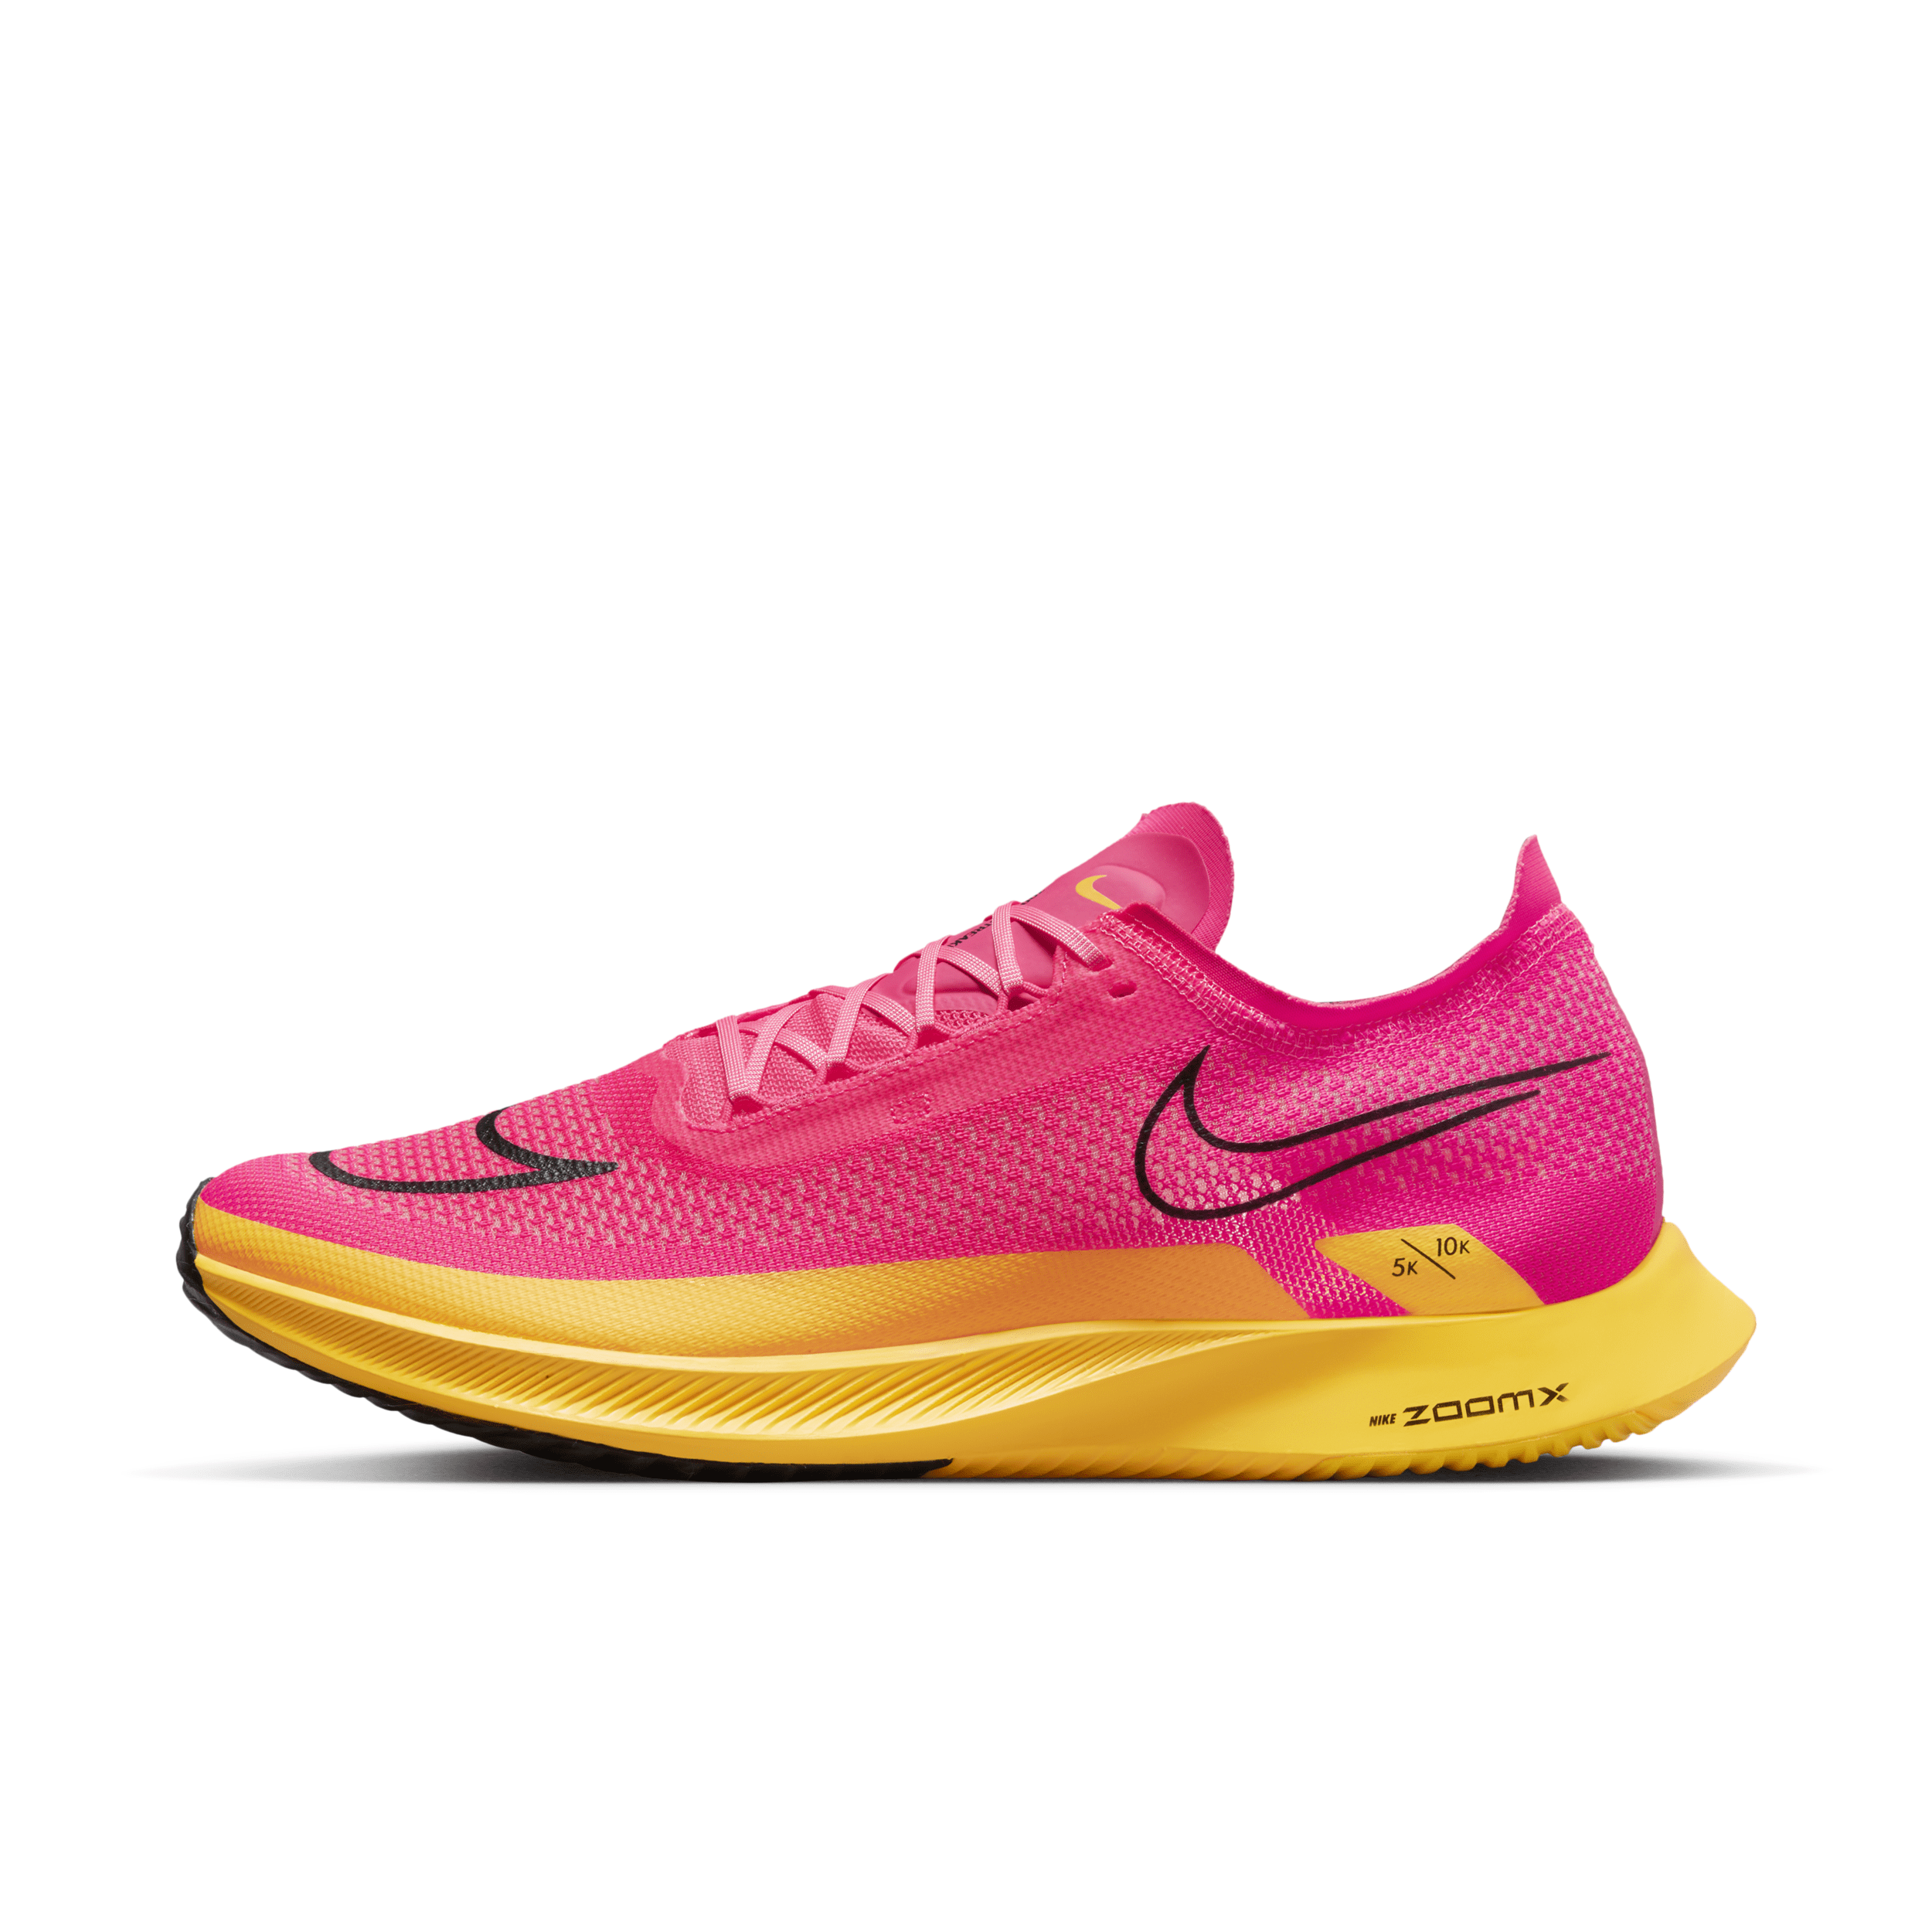 Nike Men's Streakfly Road Racing Shoes In Pink